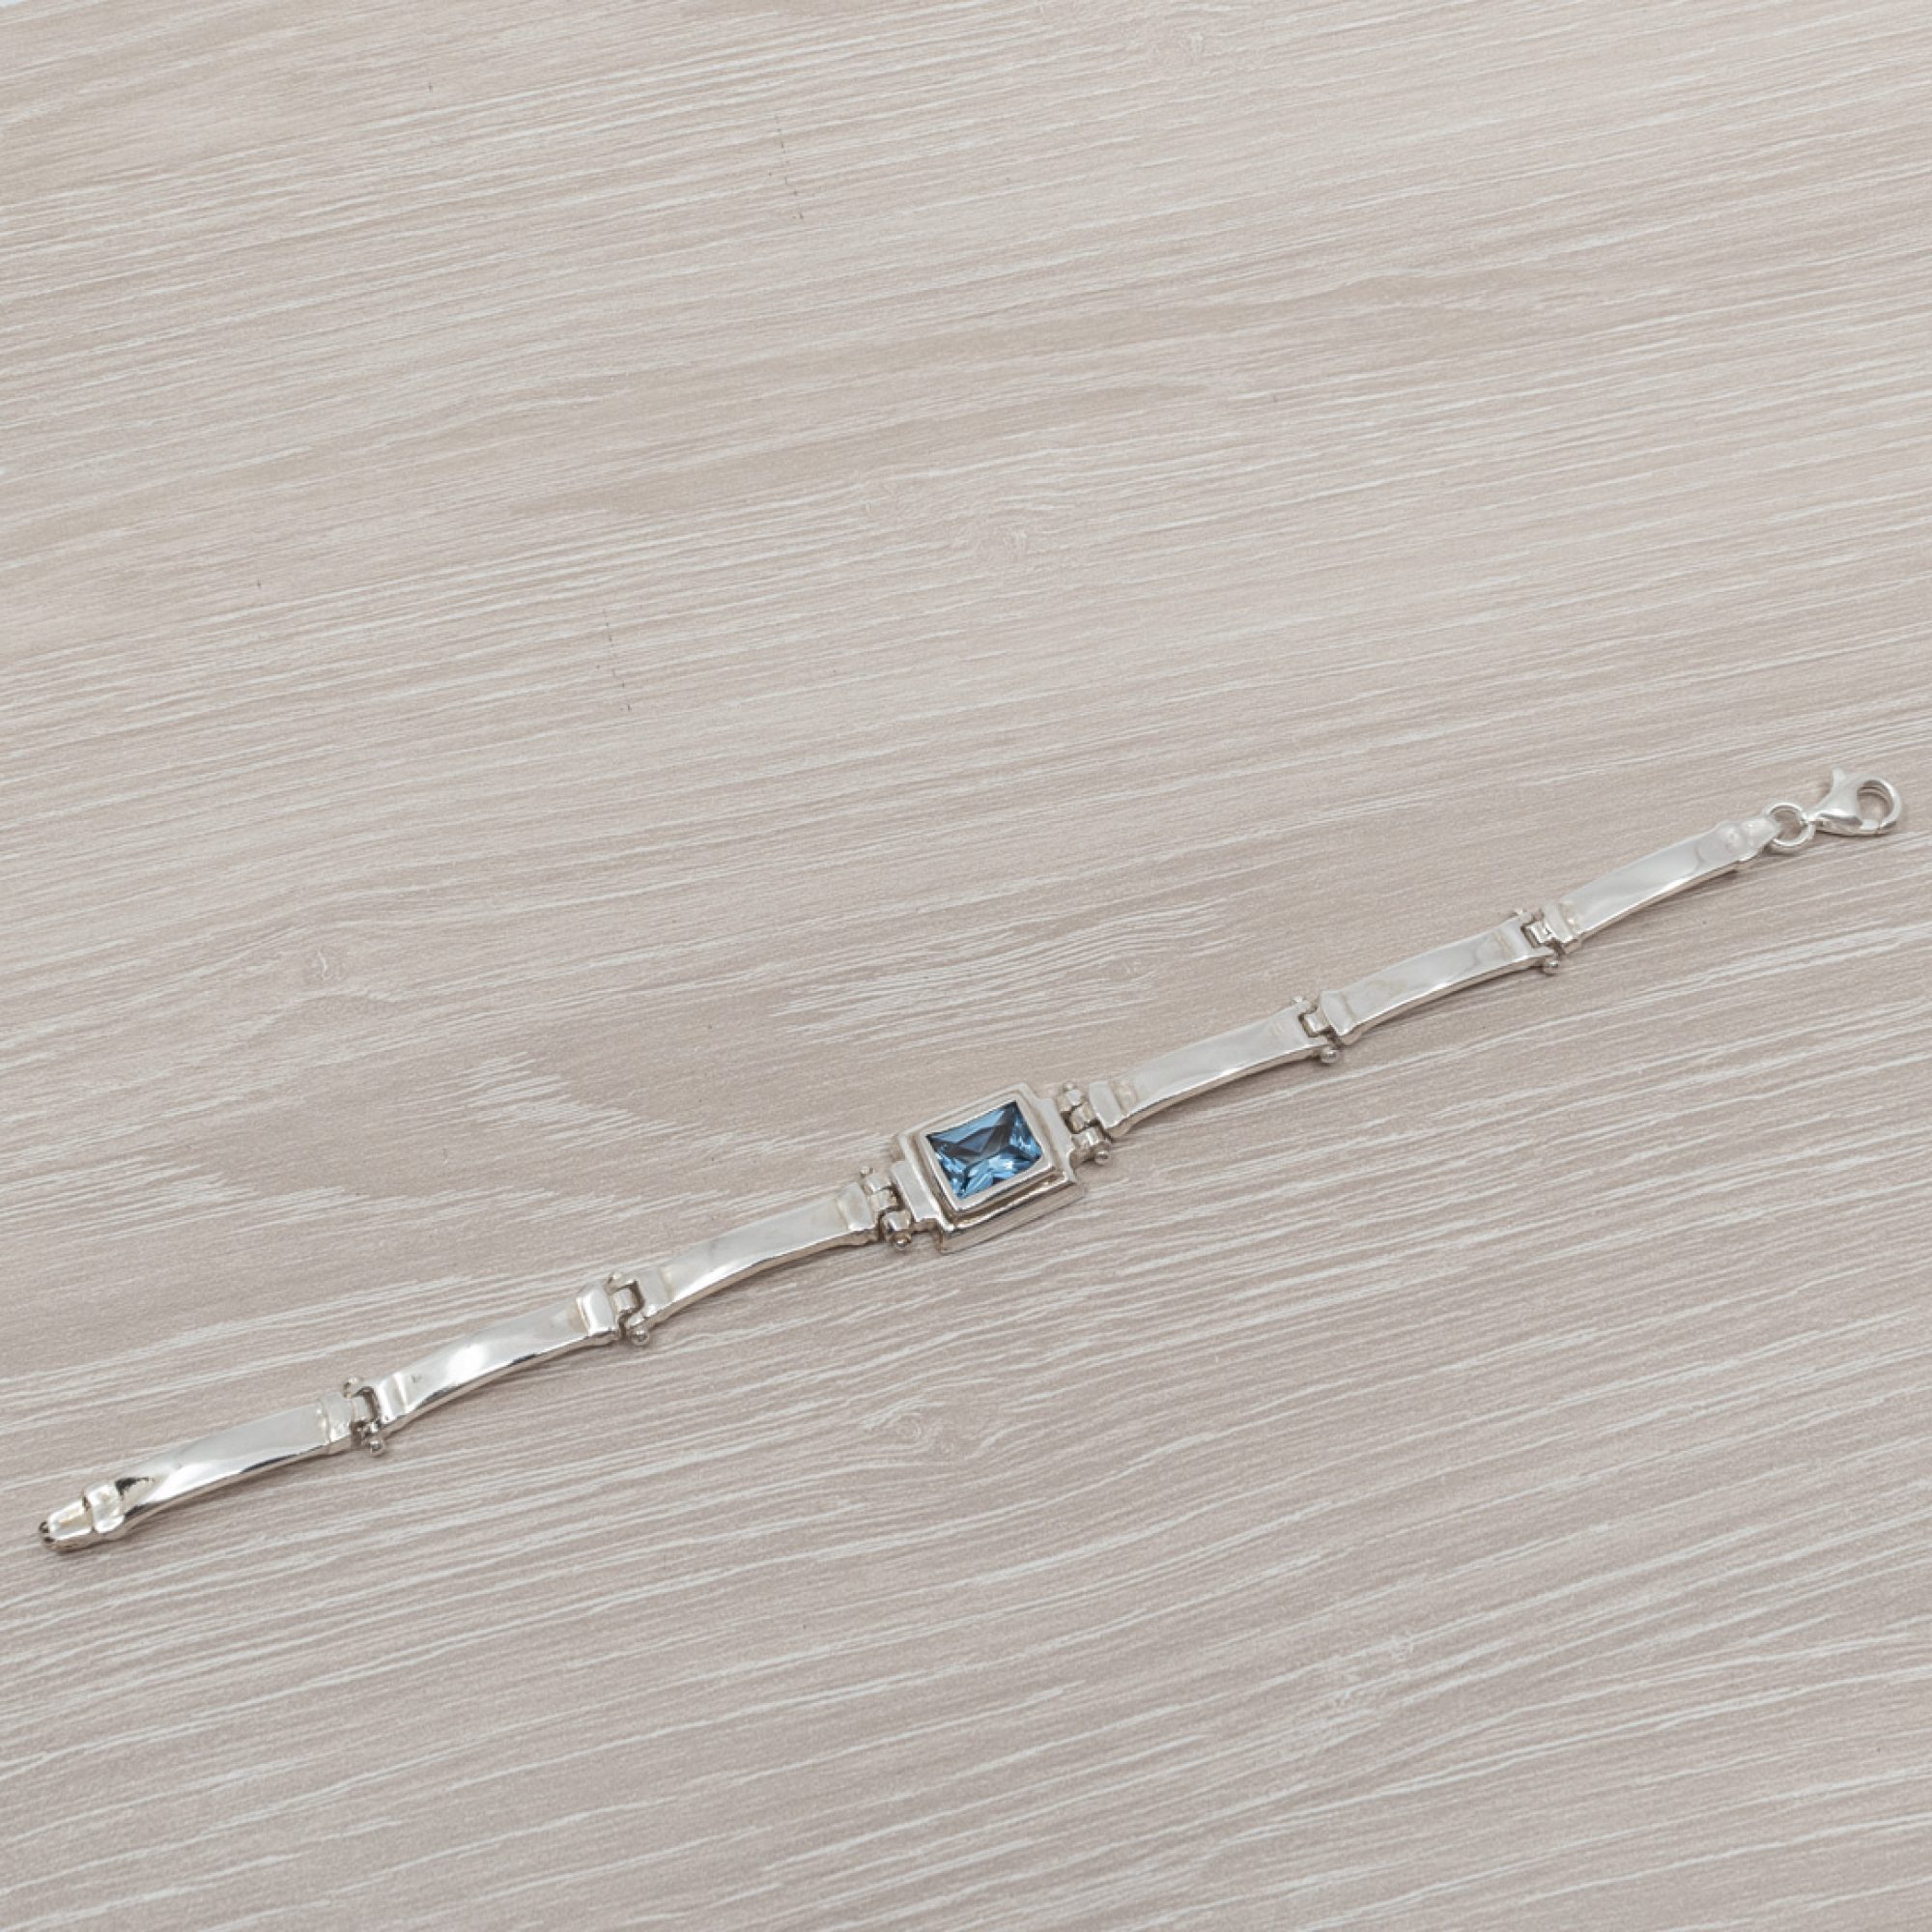 Bracelet with aquamarine stone